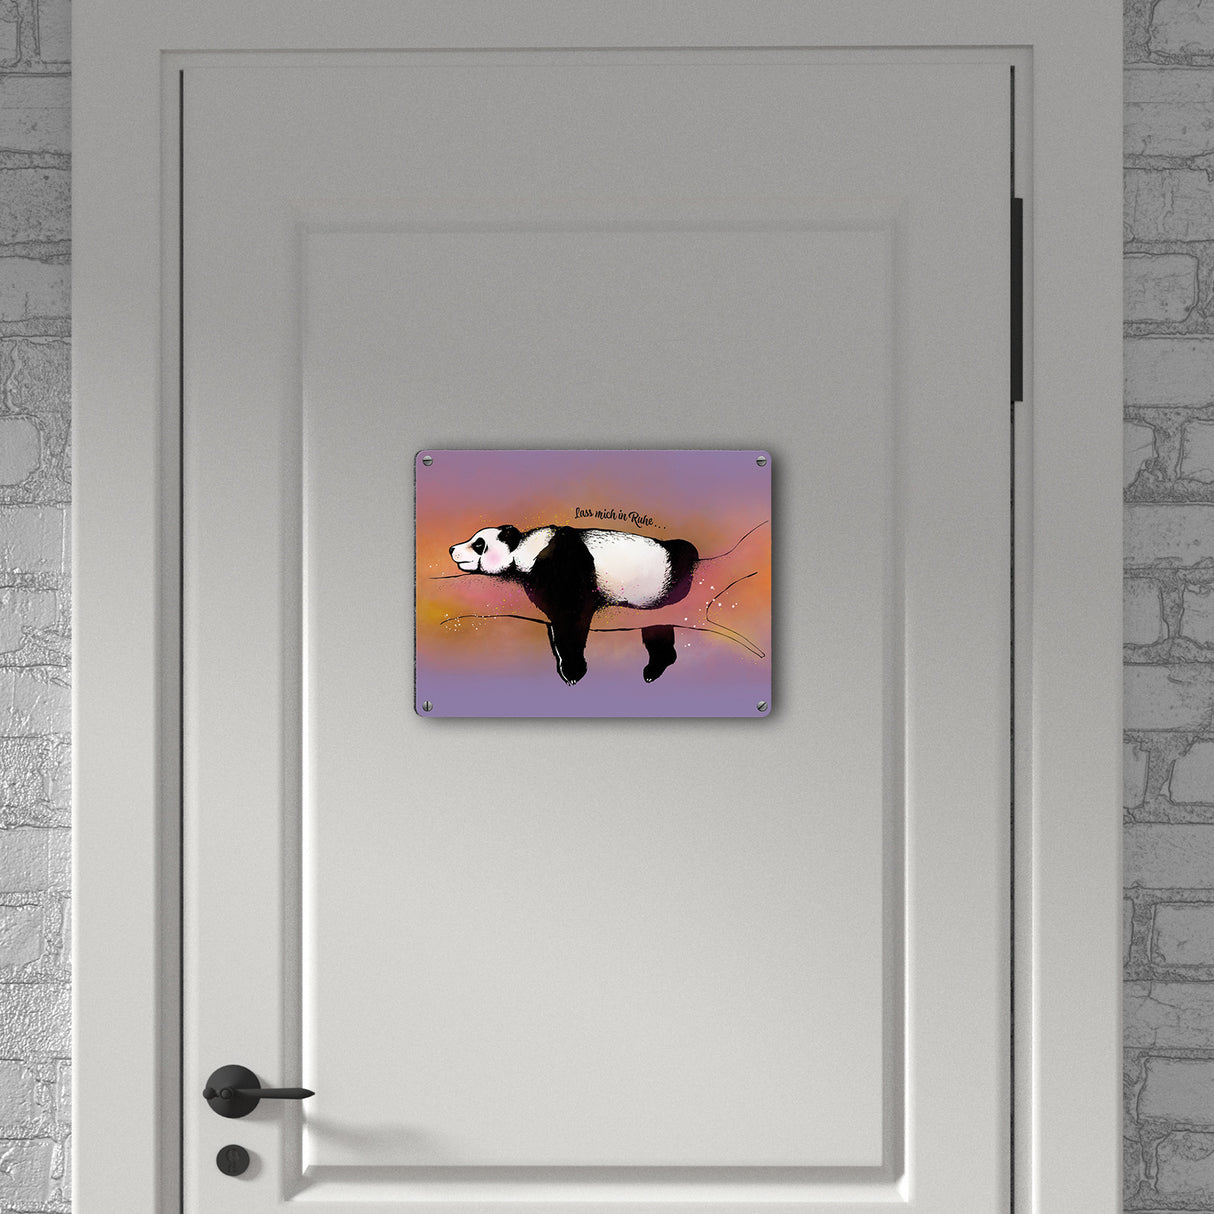 Metallschild mit Panda-Design und lustigem Spruch Lass mich in Ruhe